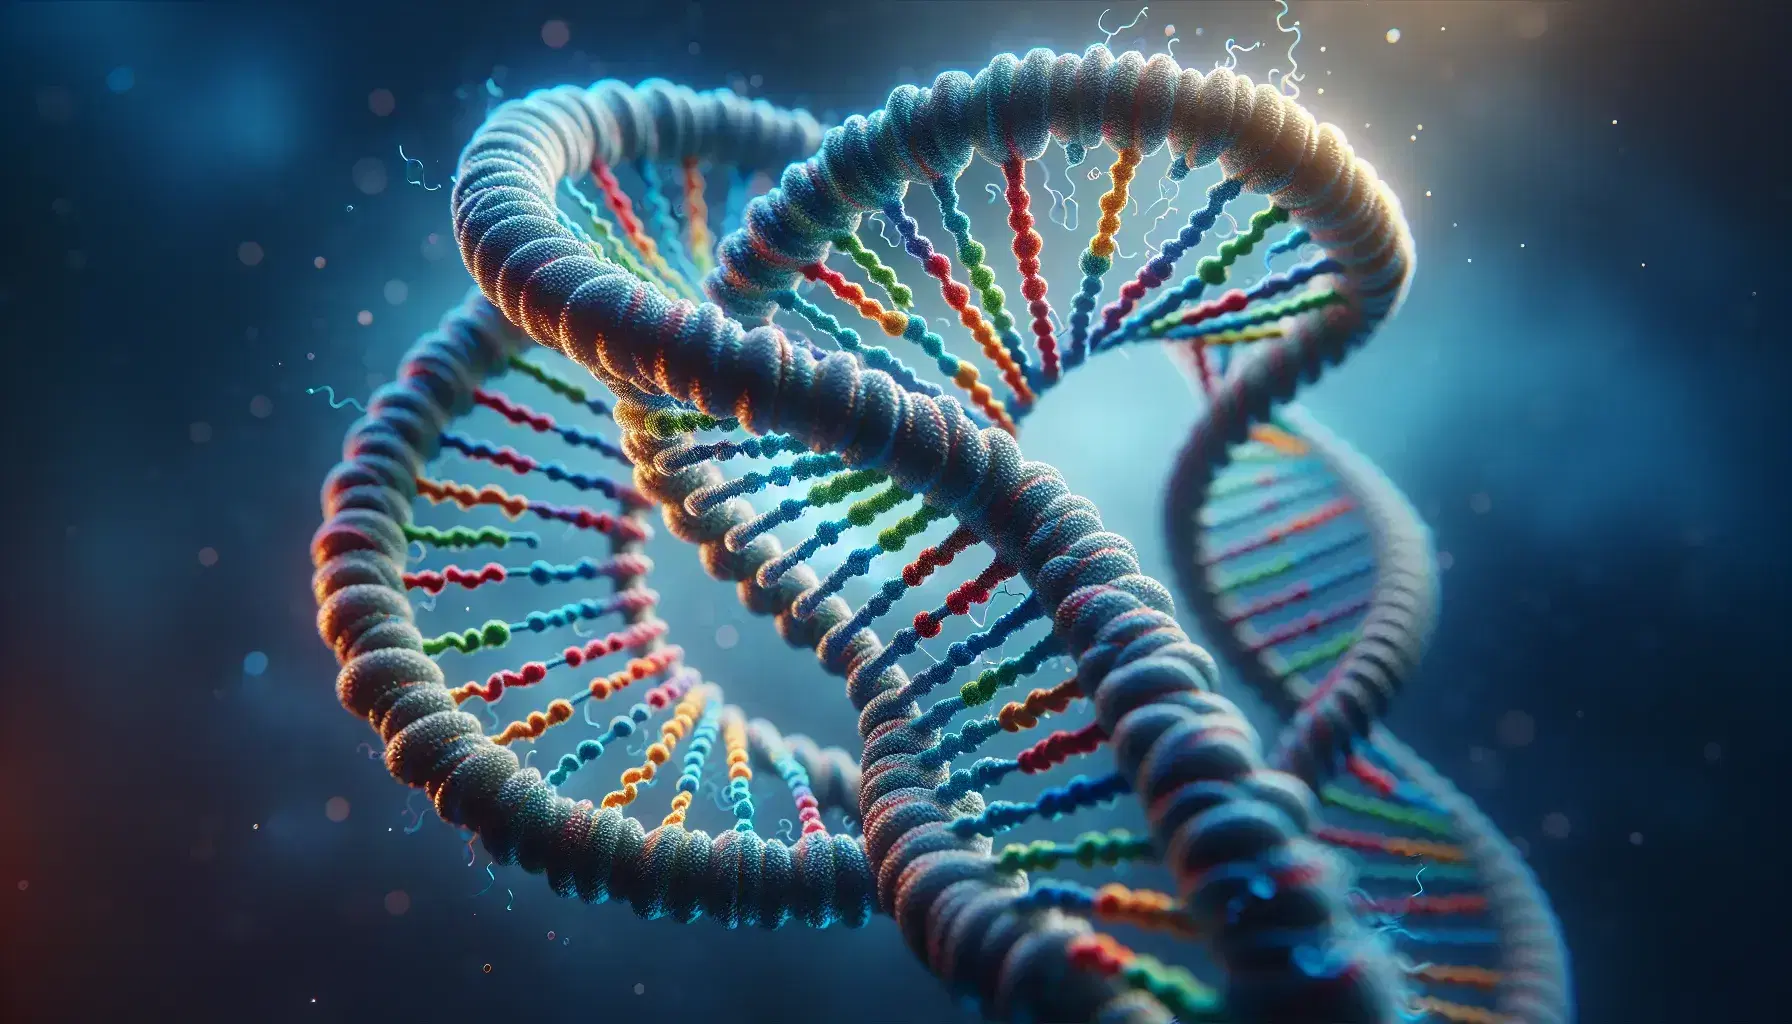 Estructura detallada de una doble hélice de ADN en 3D con segmentos coloridos y fondo desenfocado en tonos azules y grises.